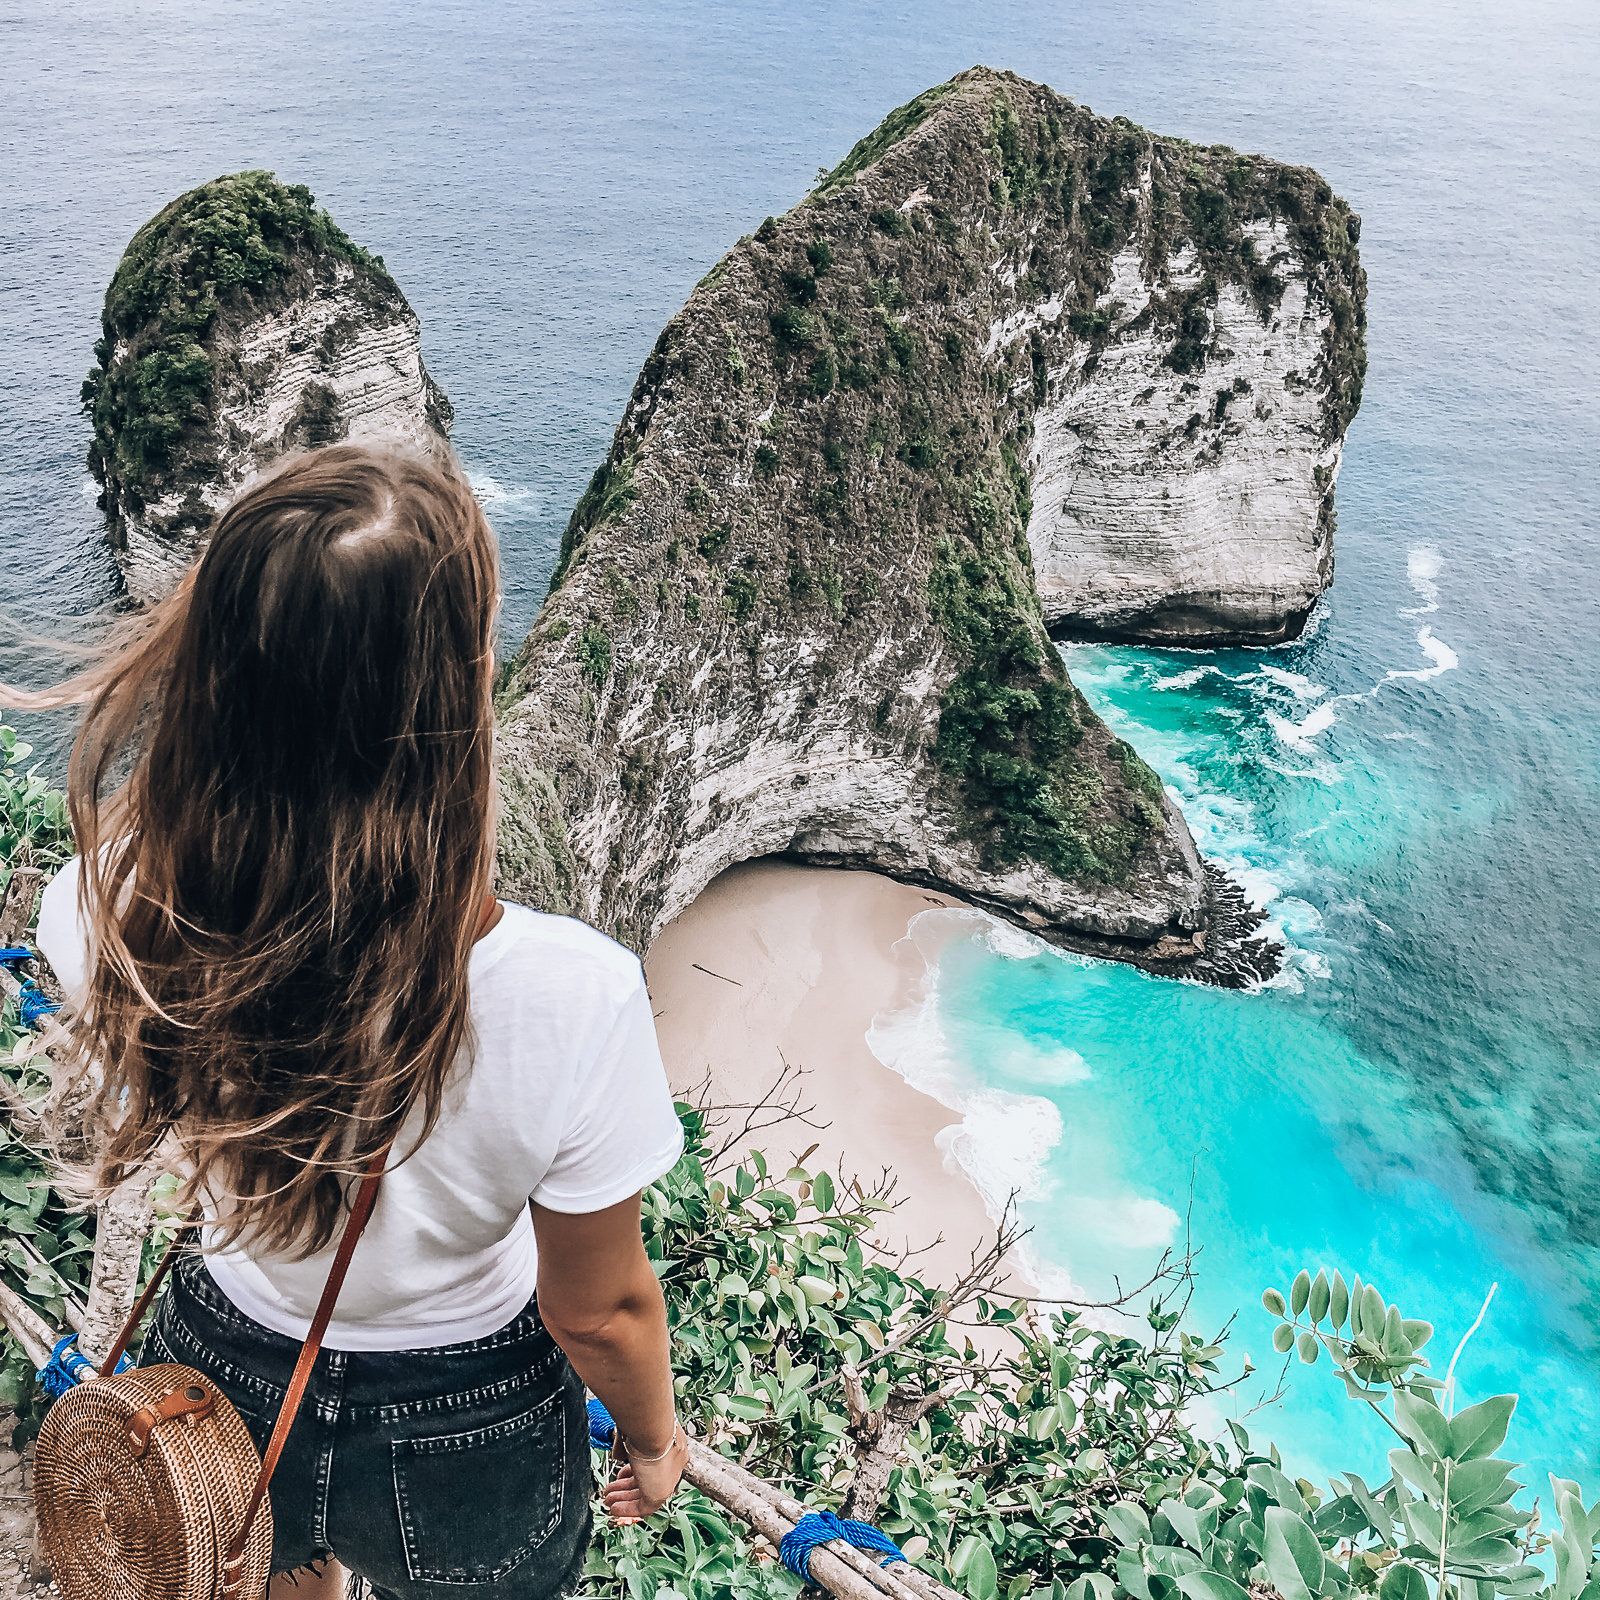 Ein Tag auf Nusa Penida - unvergessliche Erlebnisse, atemberaubende Must Sees und die schönsten Fotolocations - Bali Reise - Insel neben Bali - Bali Tagesausflug - Fashionladyloves by Tamara Wagner - Travel Blogger - Reise Blog